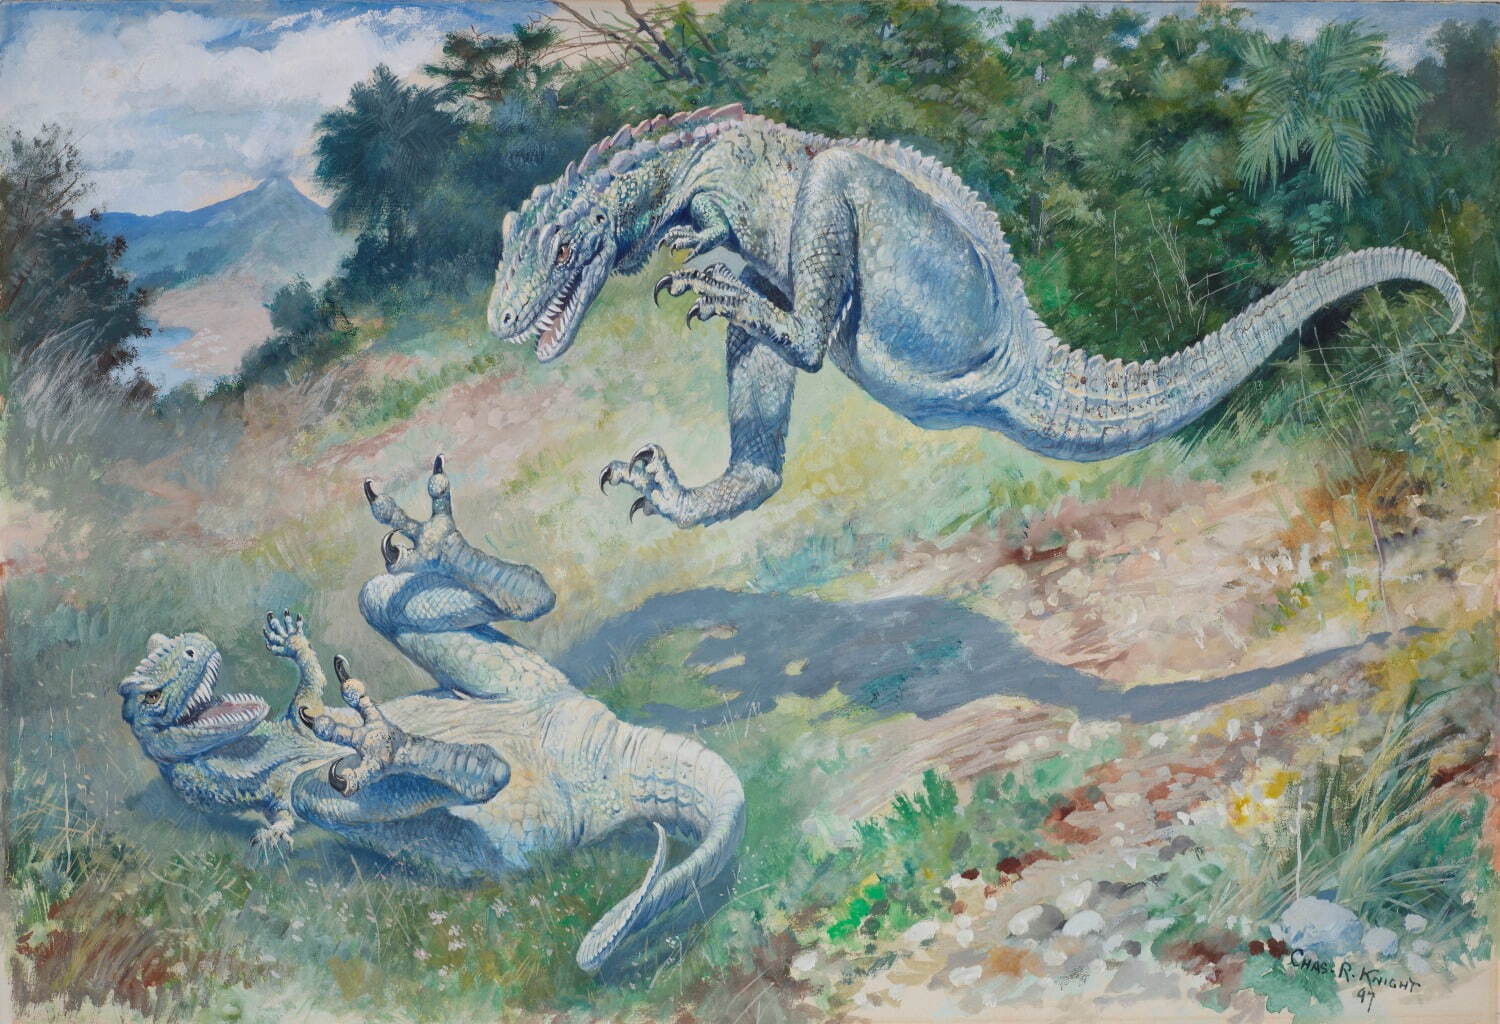 チャールズ・R・ナイト《ドリプトサウルス(飛び跳ねるラエラプス)》1897年 グアッシュ・紙 58×40cm アメリカ自然史博物館、ニューヨーク
Image #100205624, American Museum of Natural History Library.